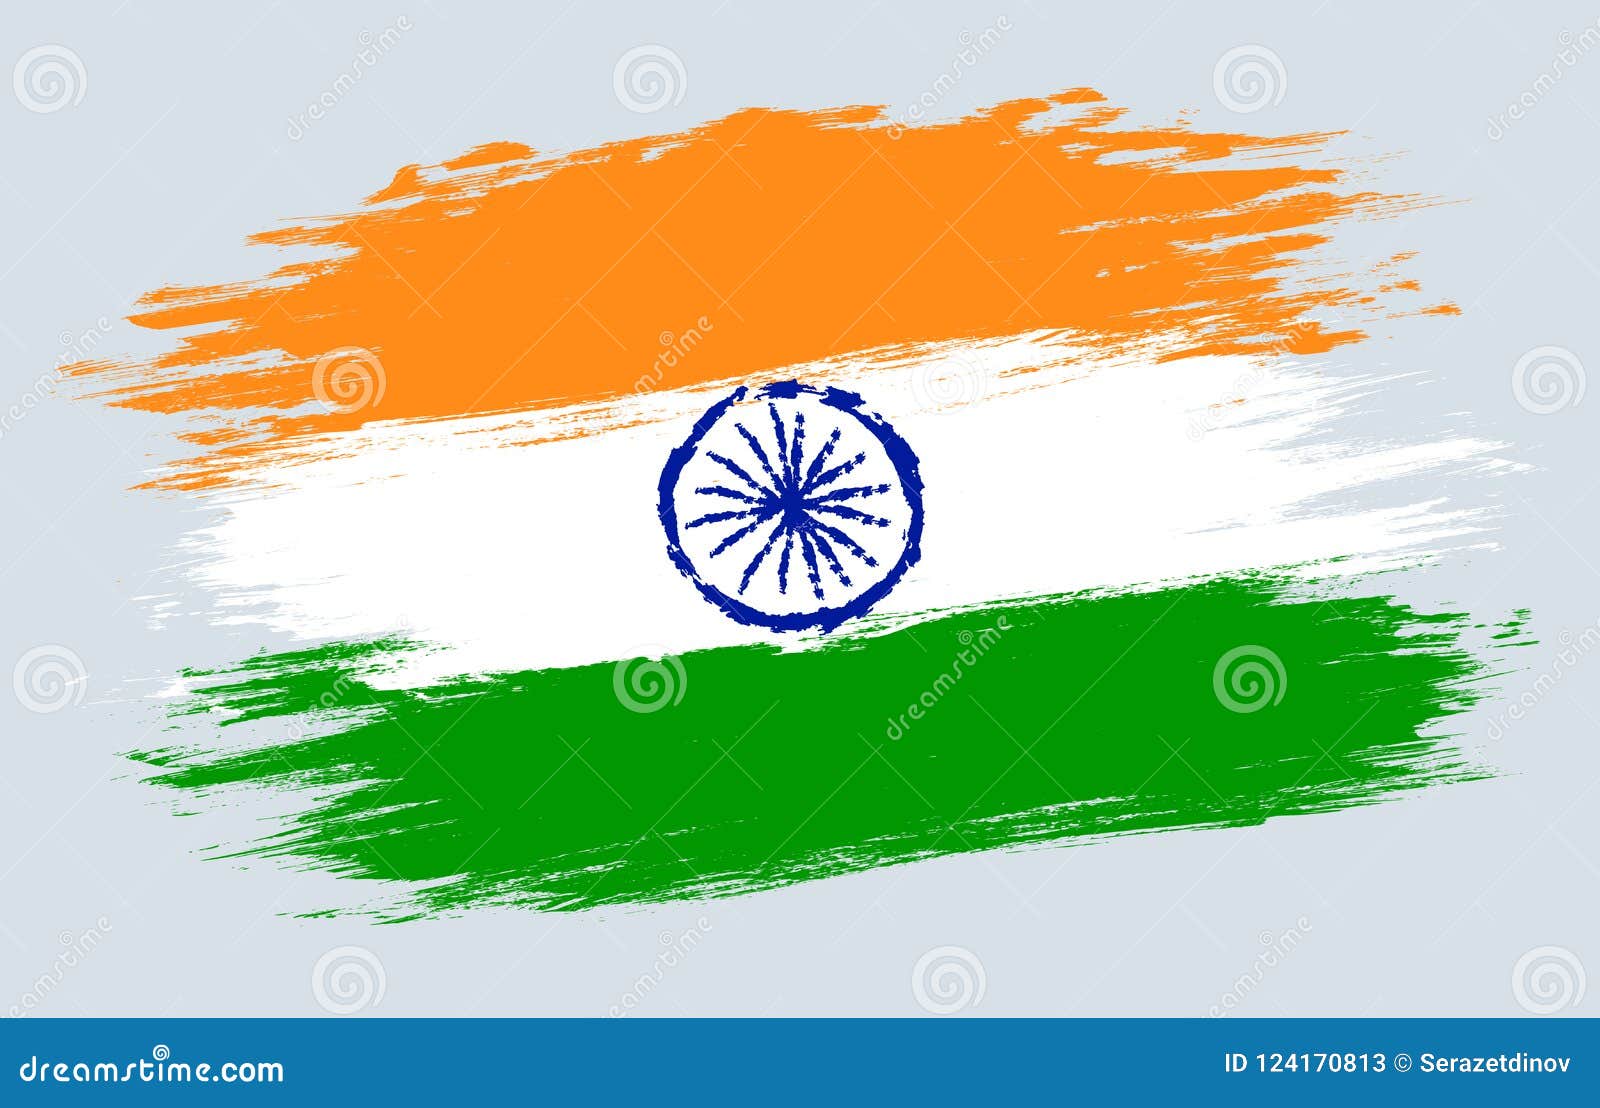 Celebrating Freedom: Indian Independence Joy by prajinsp on DeviantArt